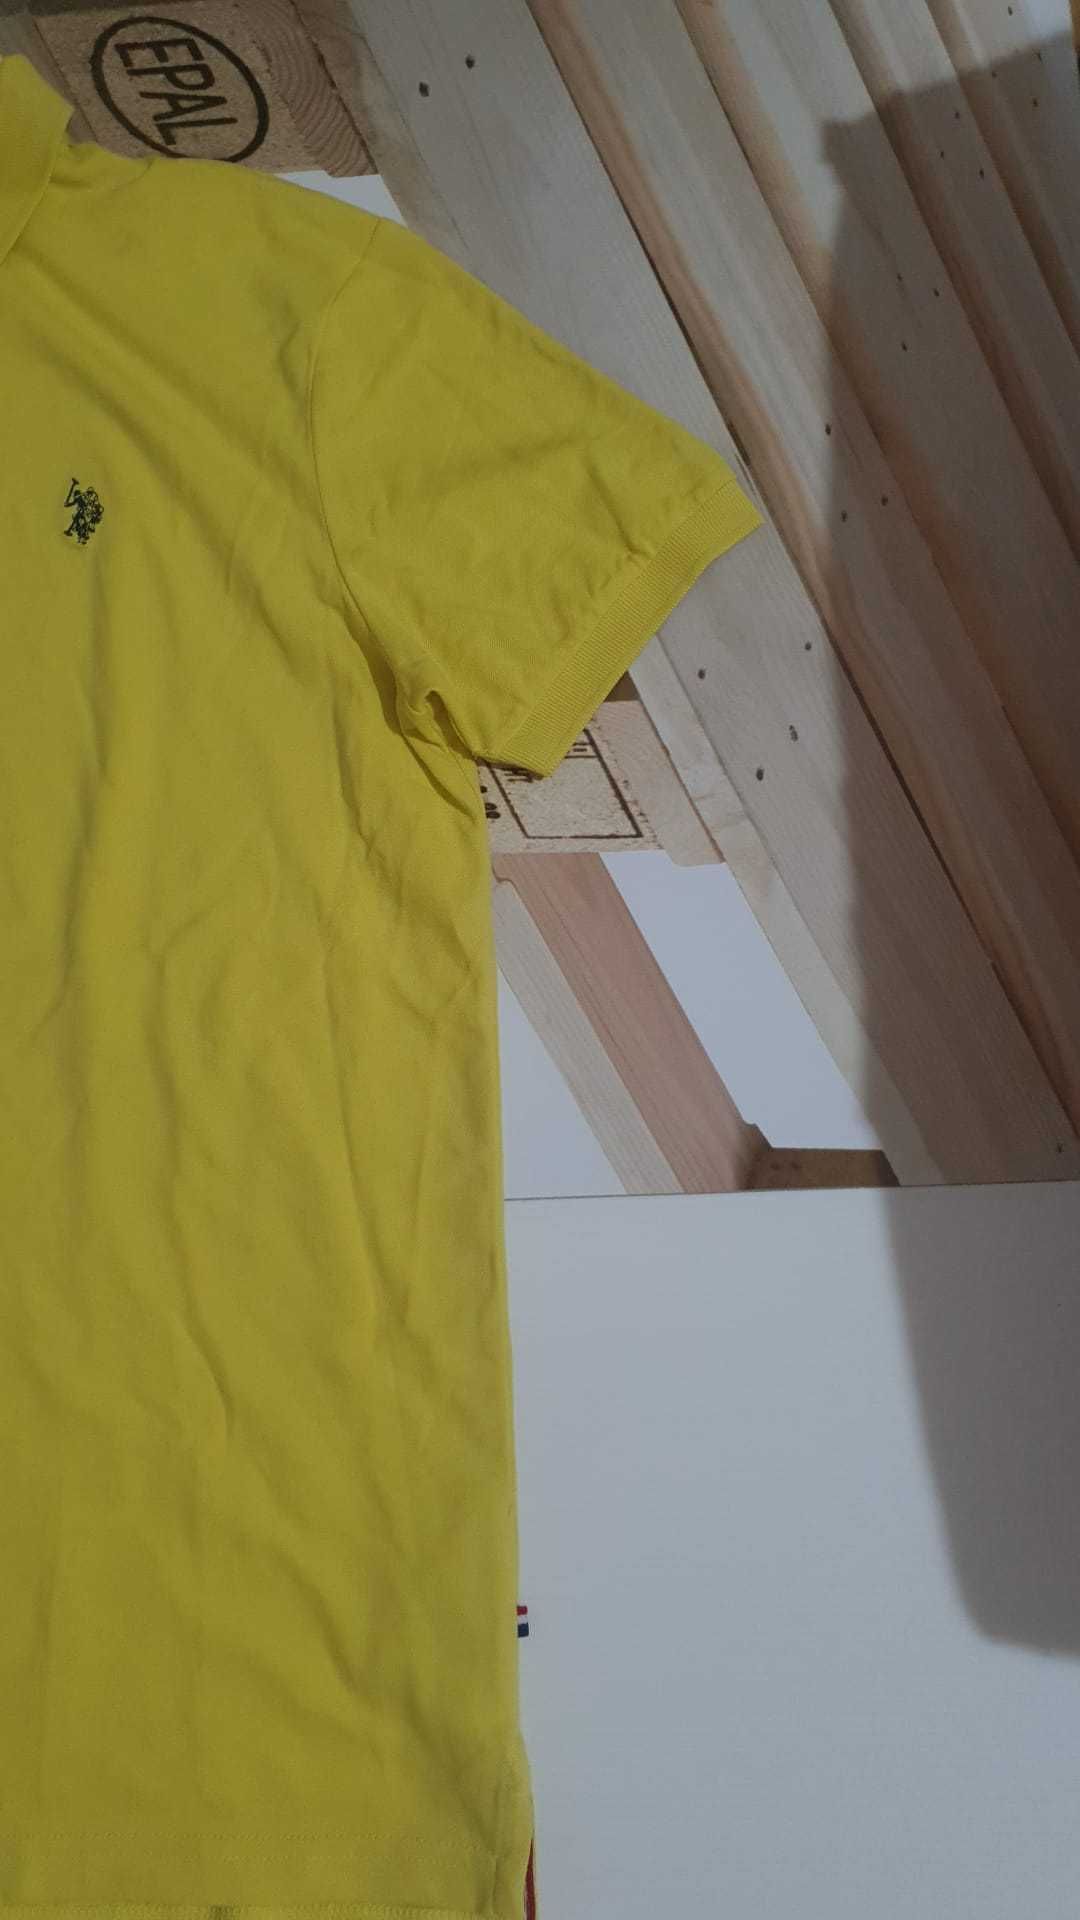 Vand tricou barbat US Polo ASSN masura L original nou cu eticheta